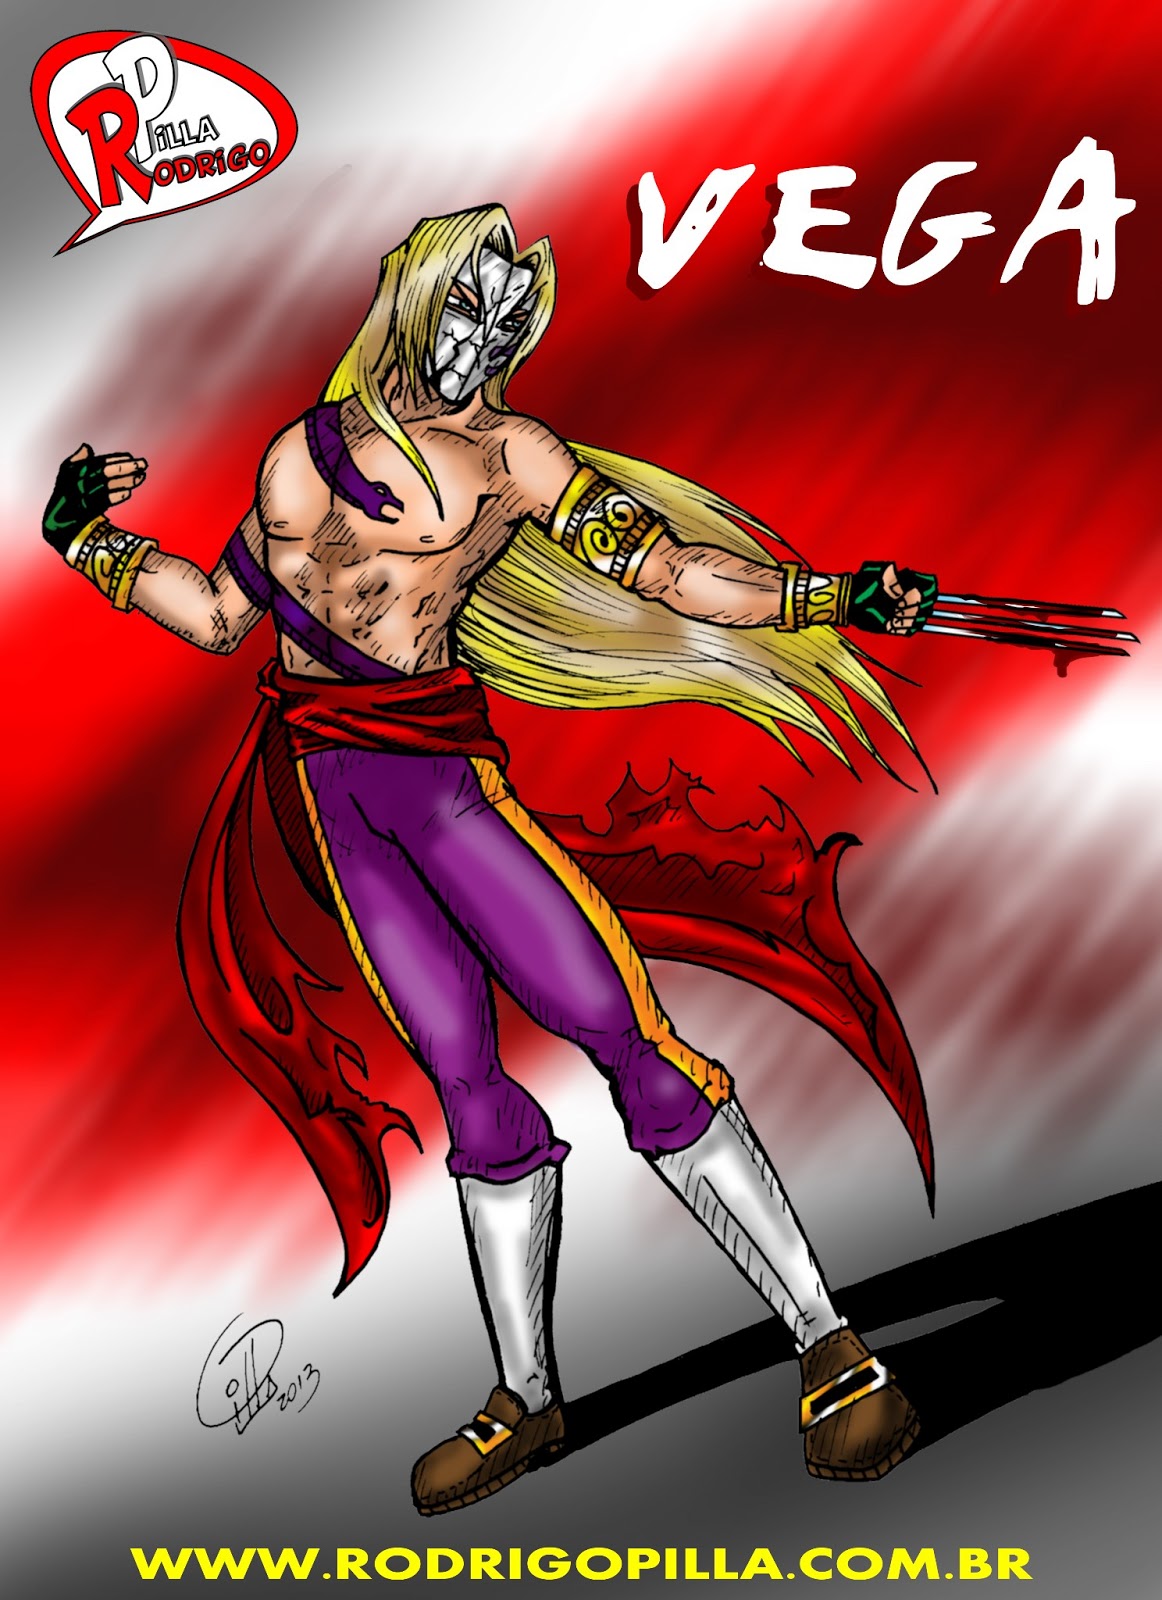 Rodrigo Pilla - Studio de Criação: Vega - Street Fighter